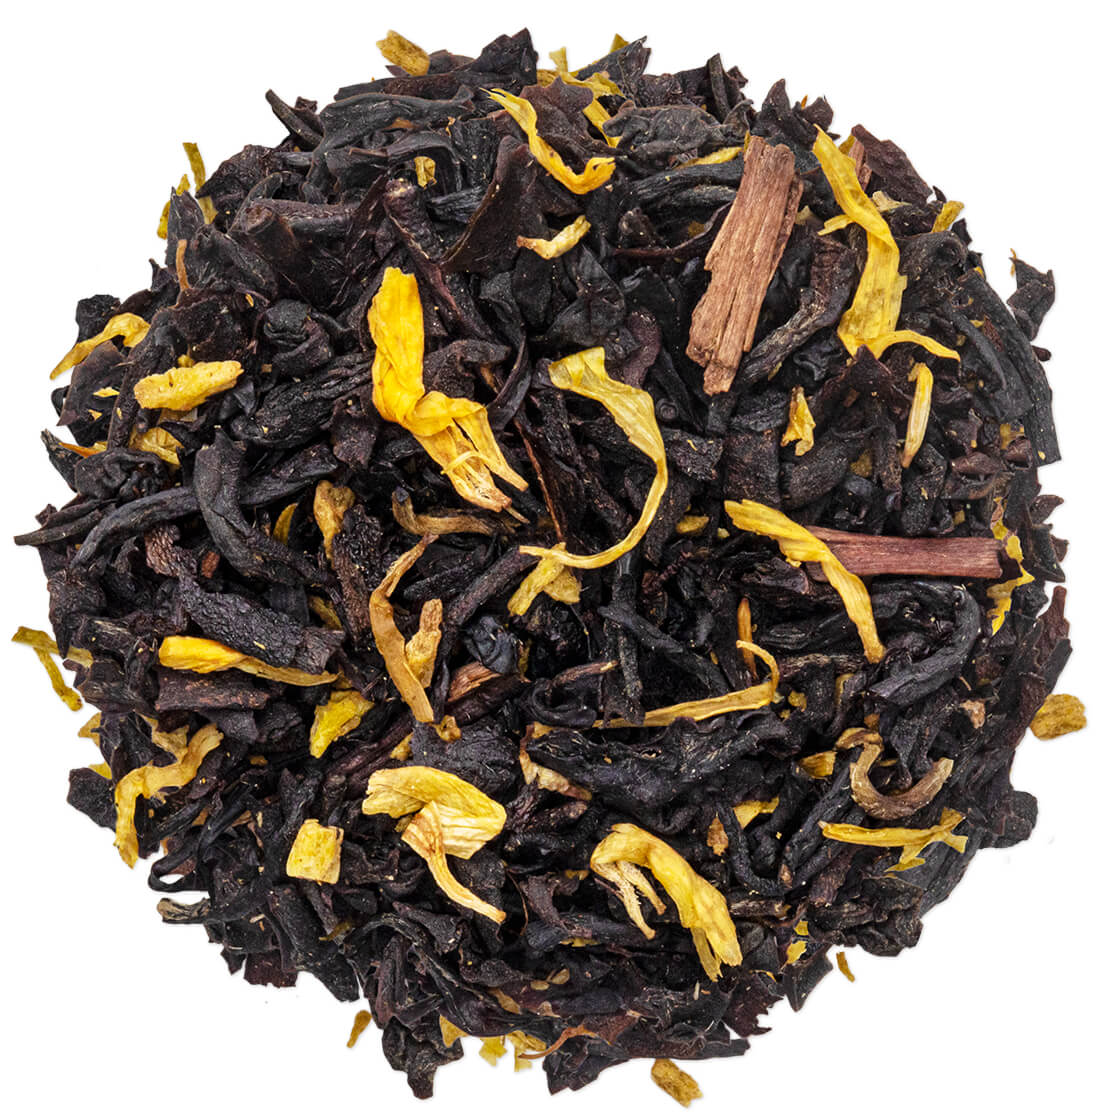 Peach Brulee Loose Leaf Tea Canister, Best Black Tea